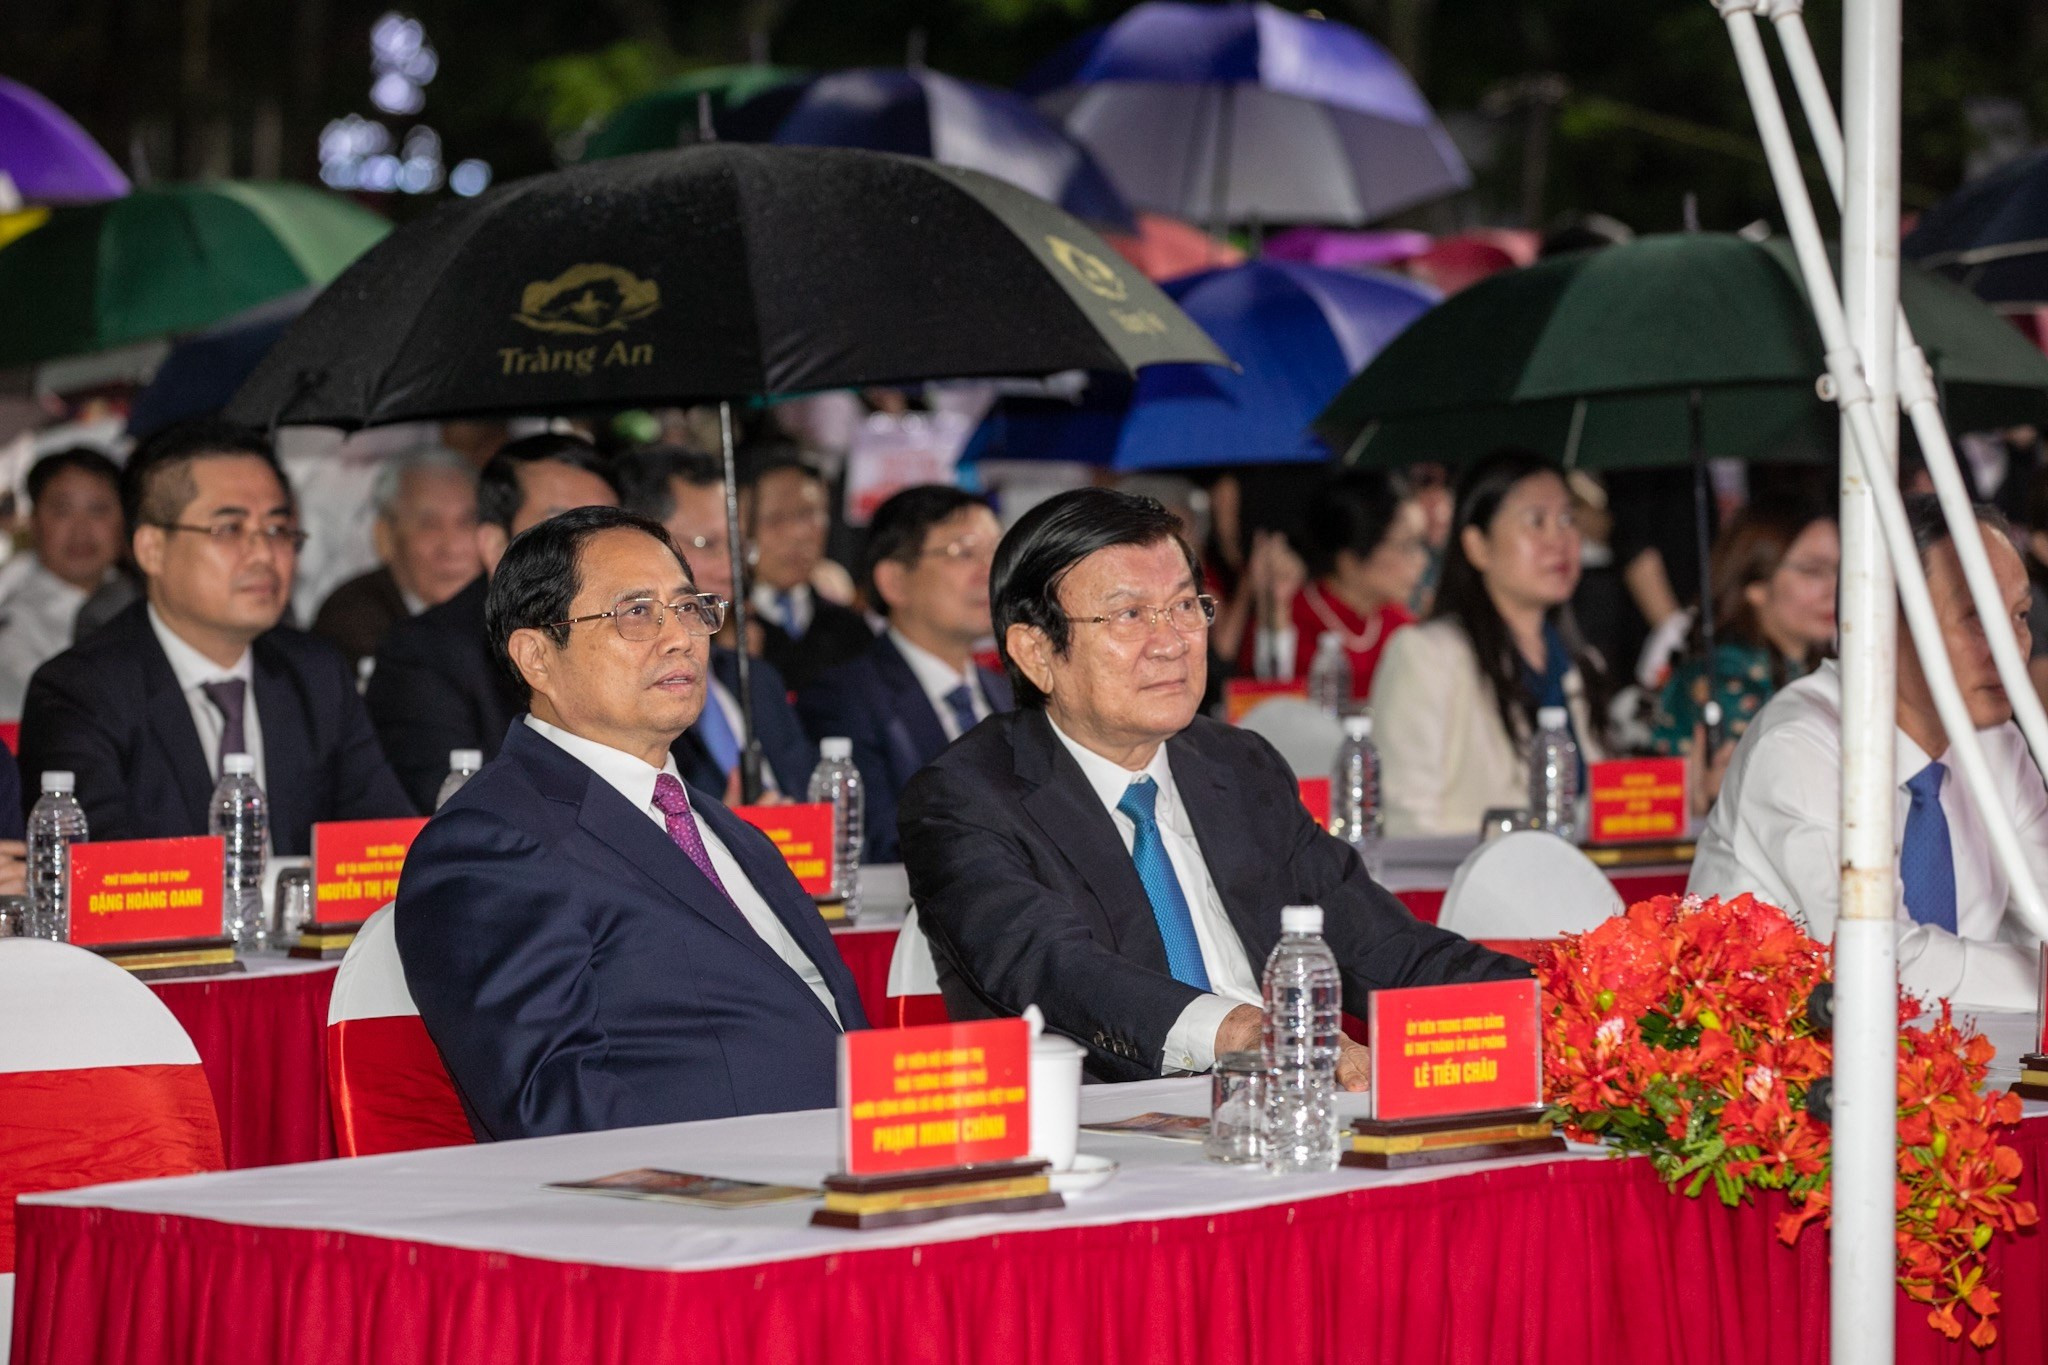 Thủ tướng Phạm Minh Chính và nguyên Chủ tịch nước Trương Tấn Sang dự khai mạc lễ hội.